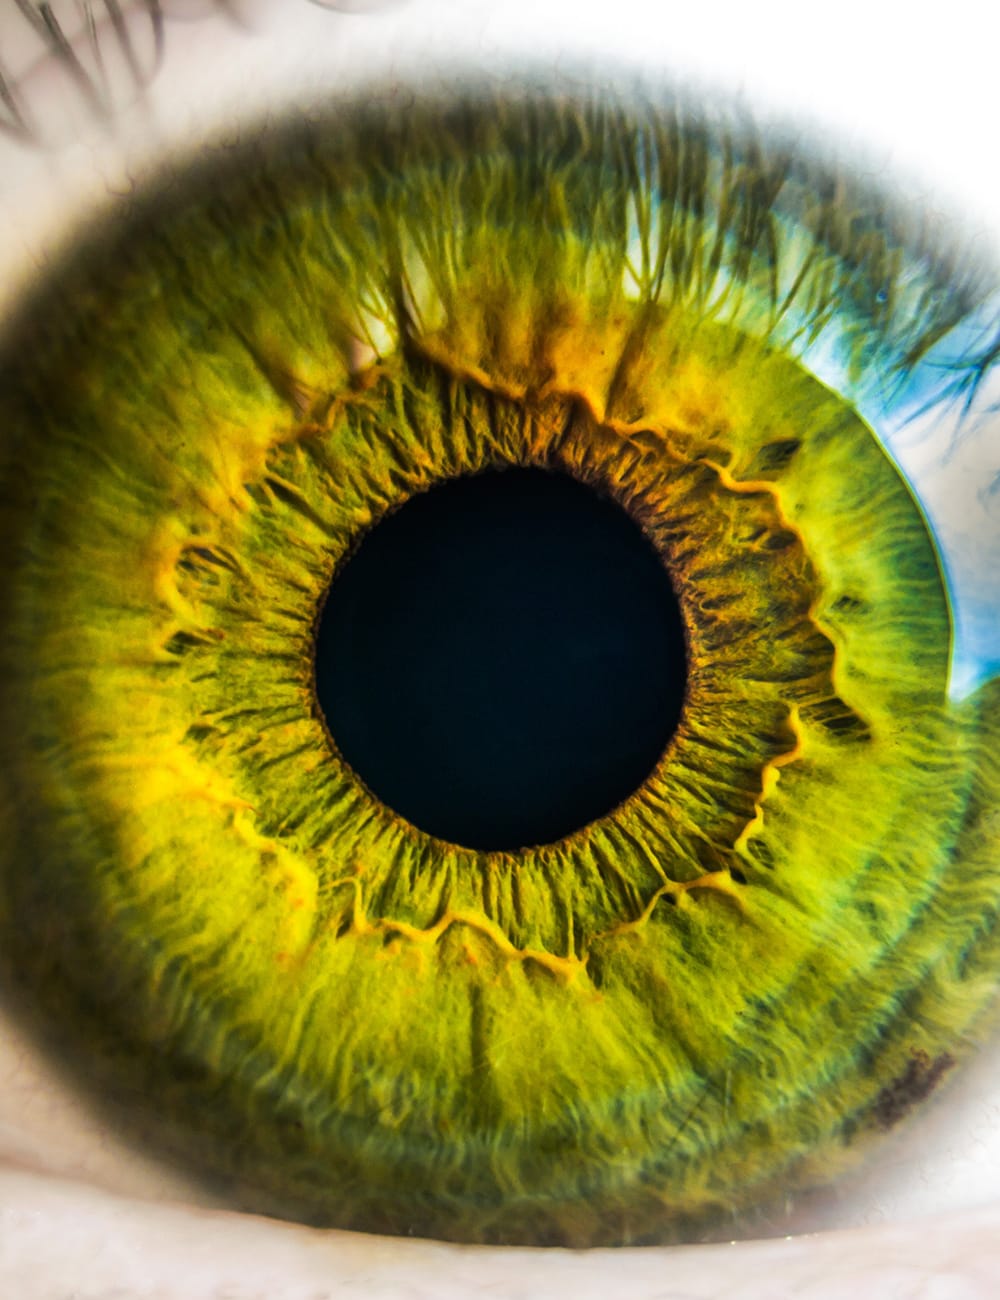 How often do you eyeball your B2B brand?